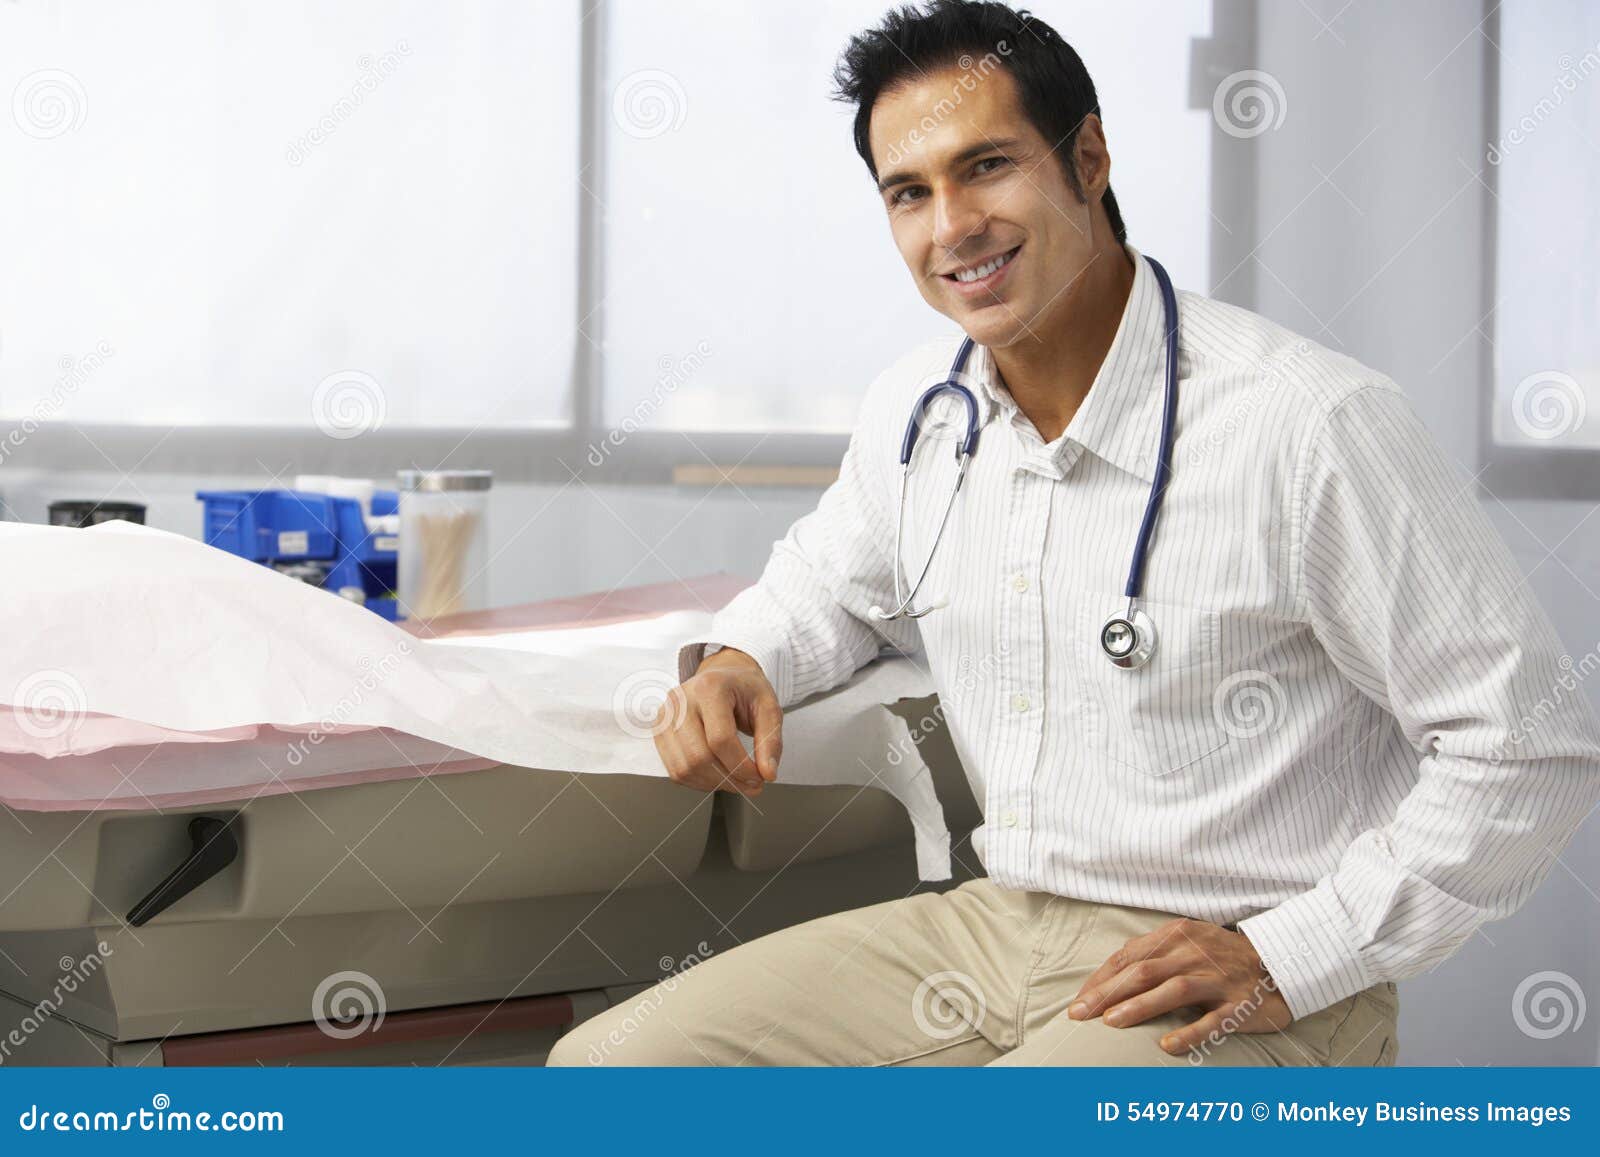 Мужской врач по половым органам как называется. Мужчина врач с короткой стрижкой. Мужчина врач реальное фото. Врач мужчина Греция. Врач мужчина взрослый индус.